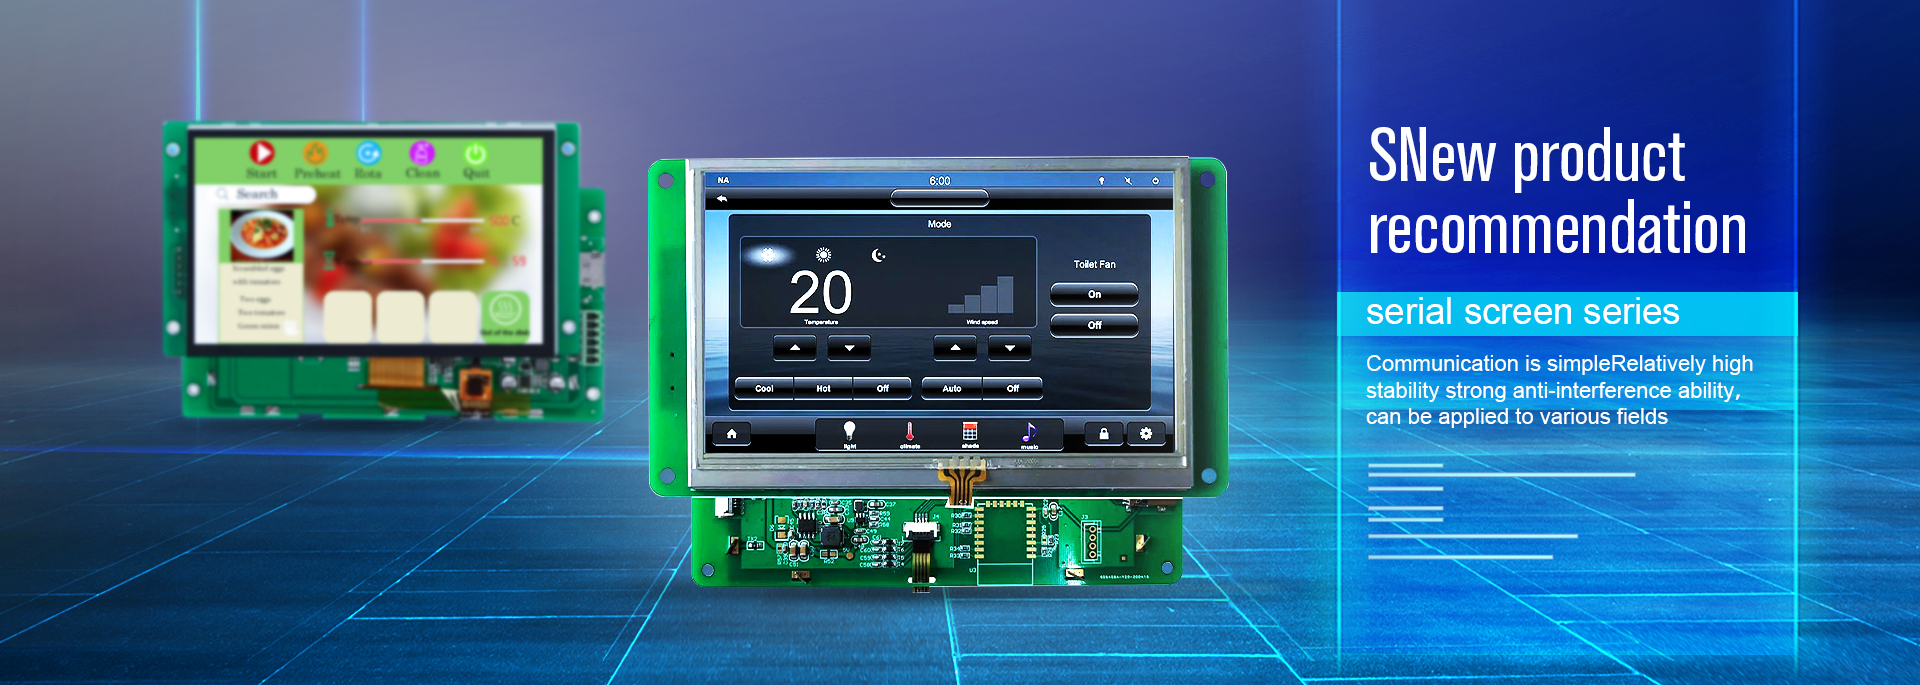 Pang-industriya na TFT-LCD display